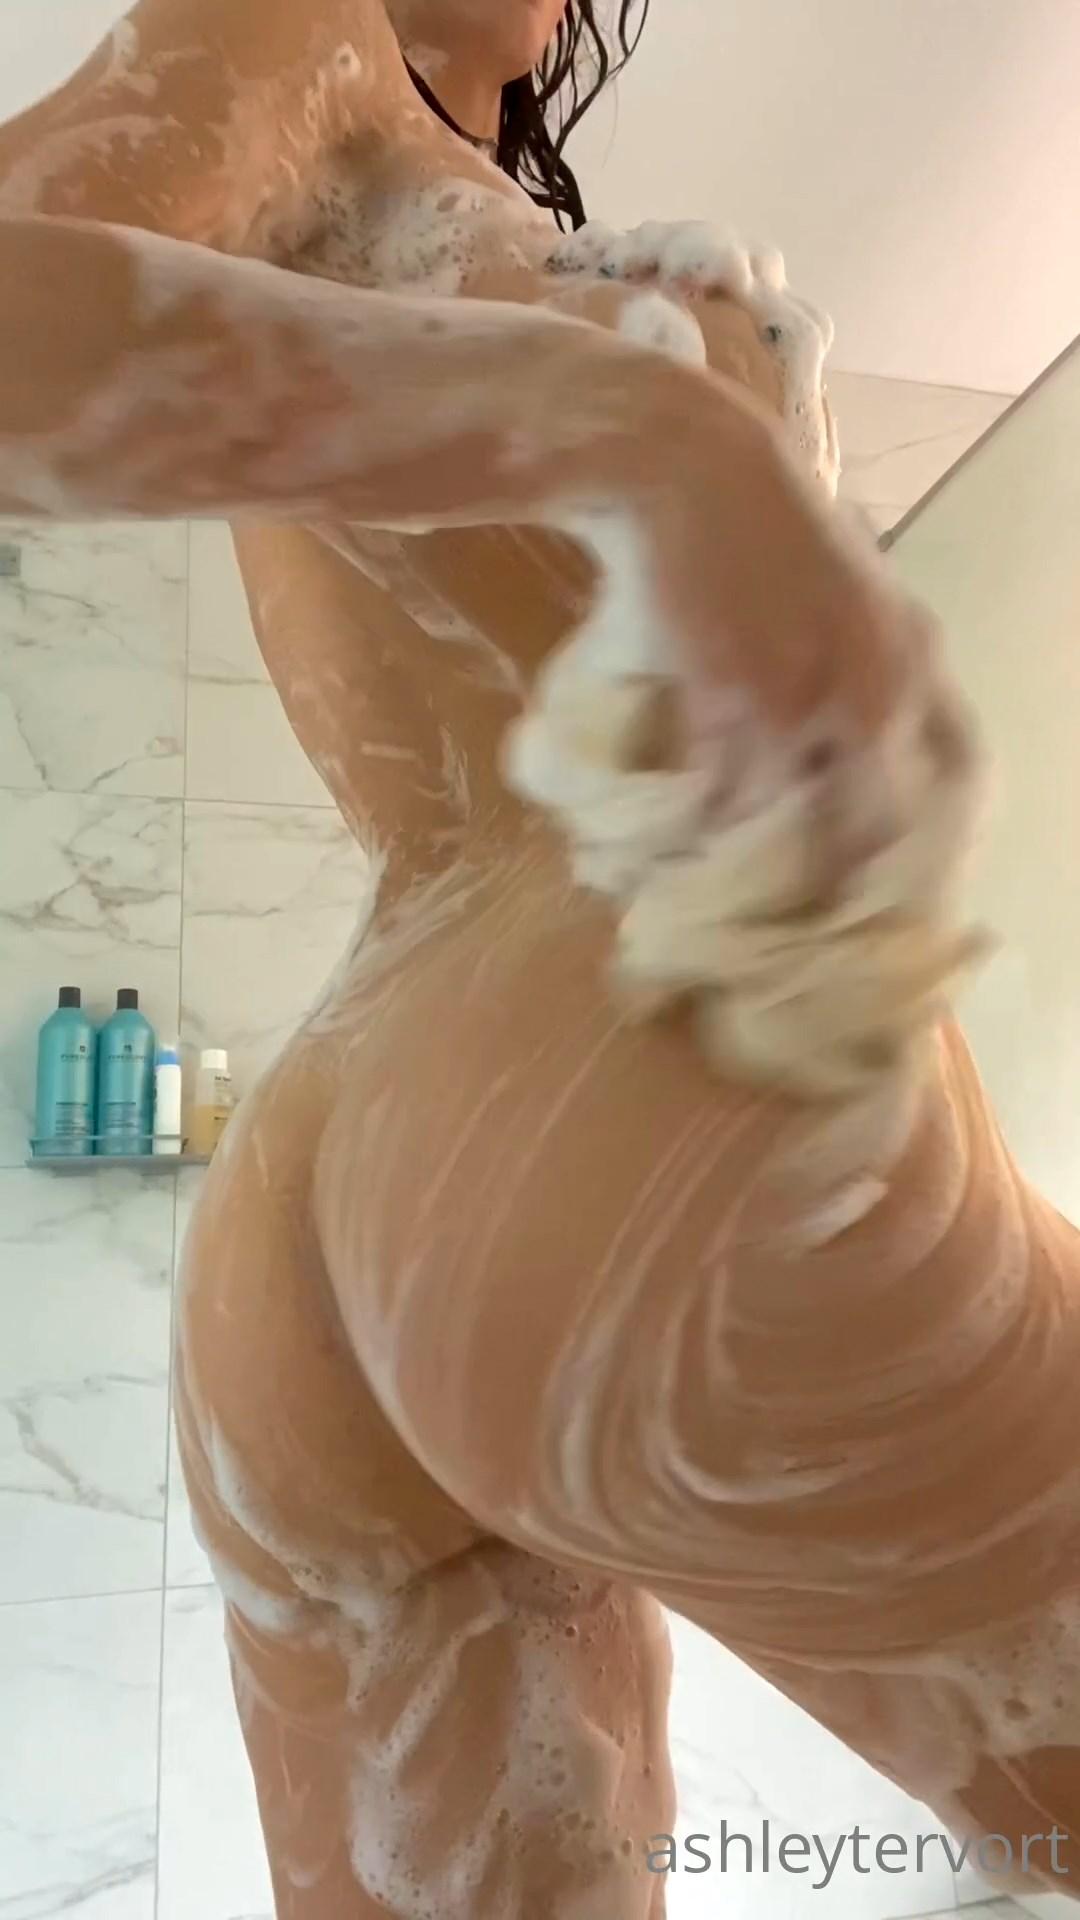 Ashley tervort nude striptease porn video leaked